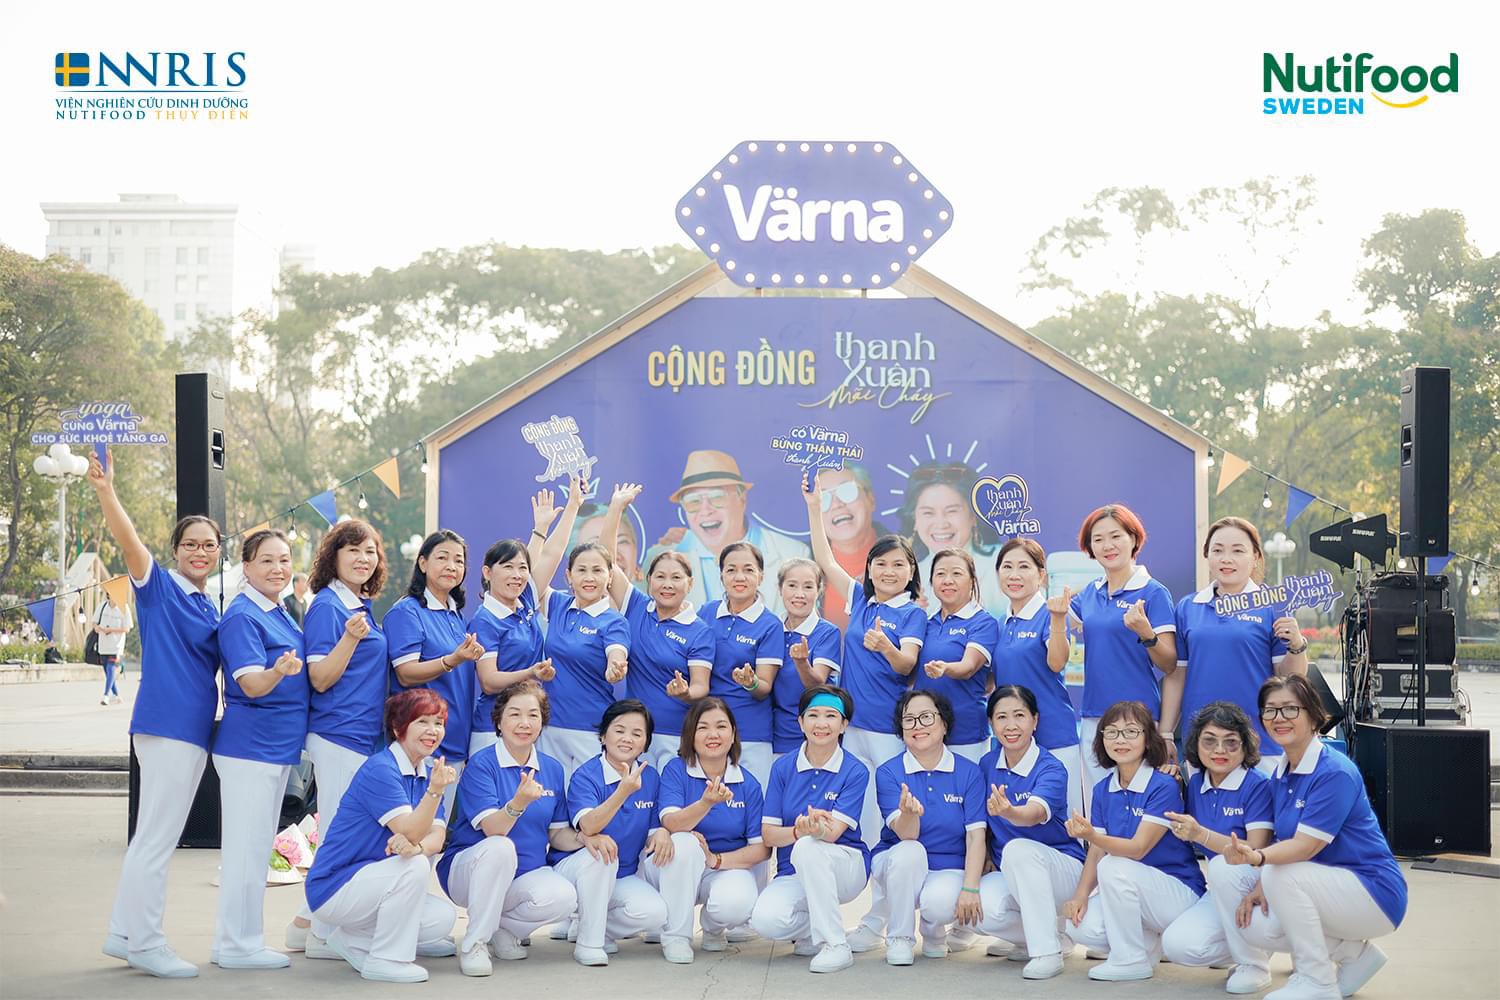 Không chỉ đồng hành trong vấn đề sức khỏe thể chất, Värna còn truyền cảm hứng sống nhiệt huyết trọn vẹn cho người trưởng thành Việt - Ảnh: Nutifood